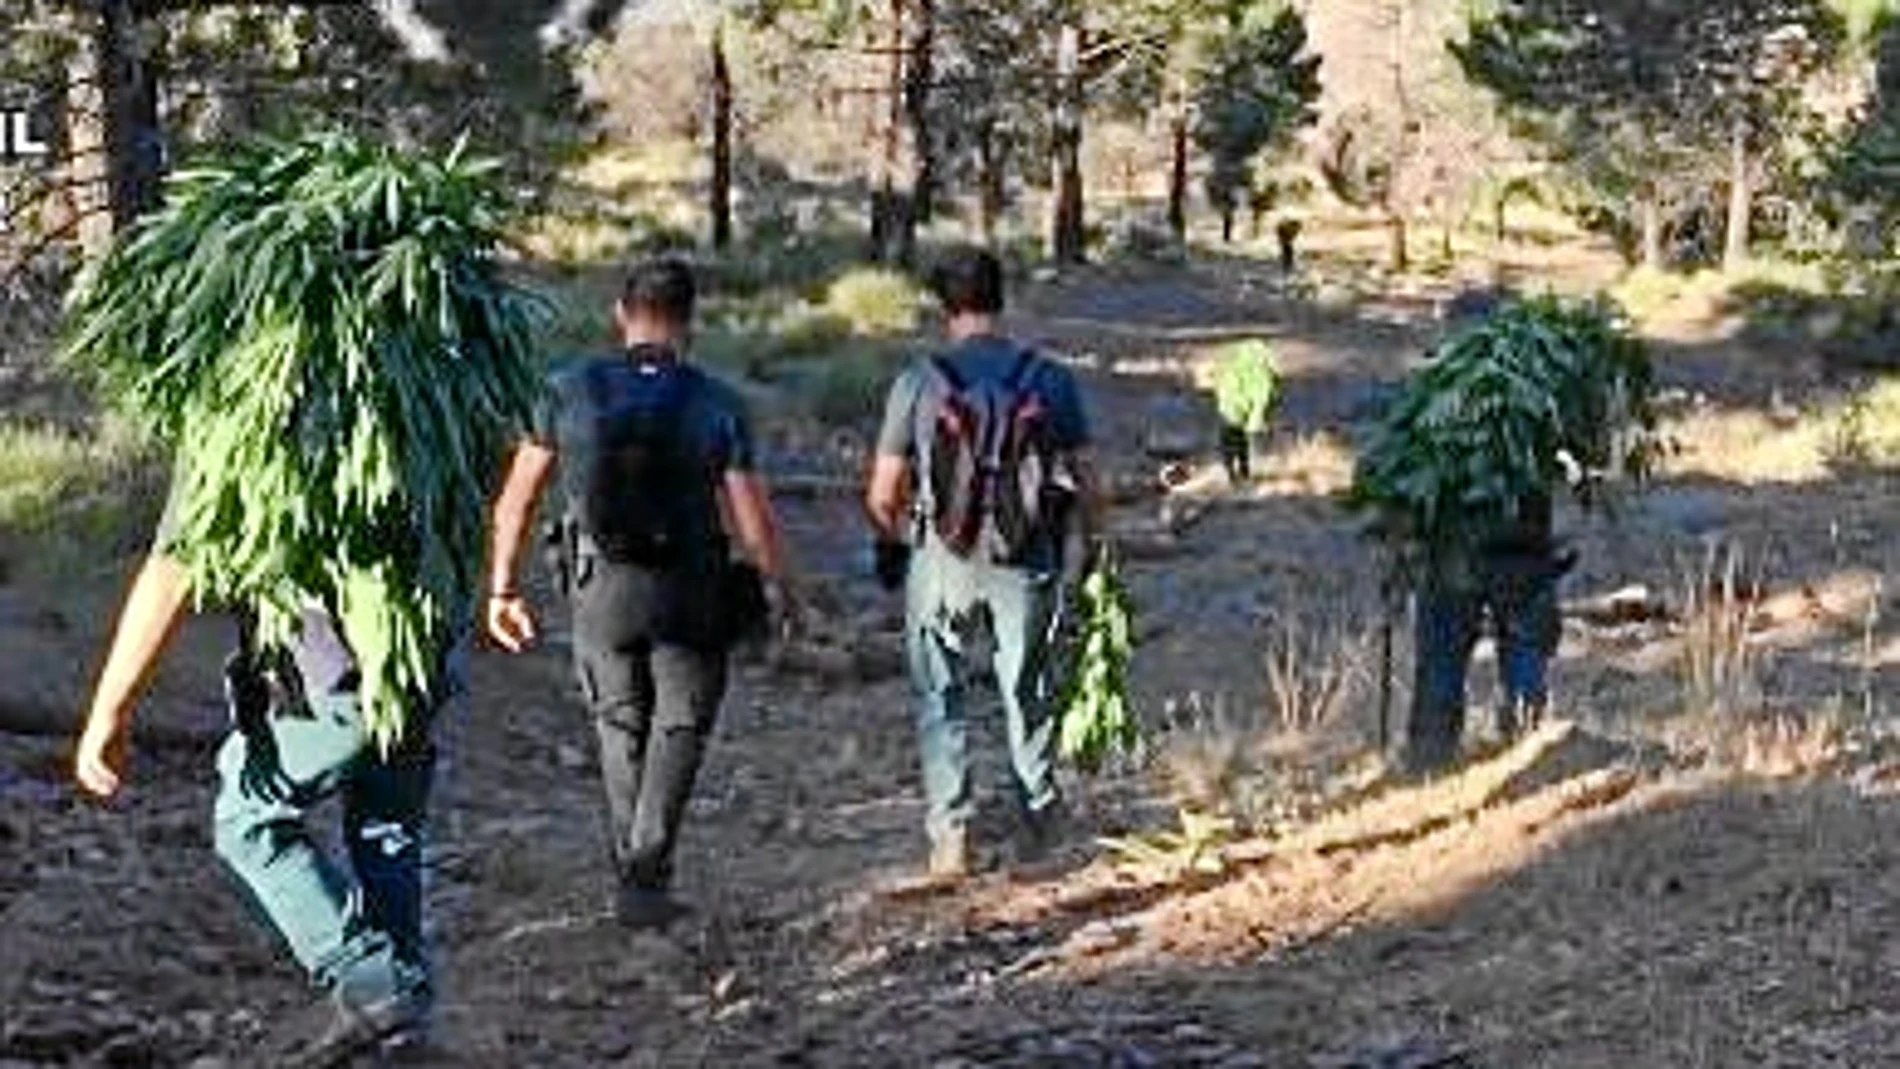 2.320 plantas de marihuana para «autoconsumo» es lo que alegaron los detenidos de la aldea tras la incautación de las plantas en el Parque Natural